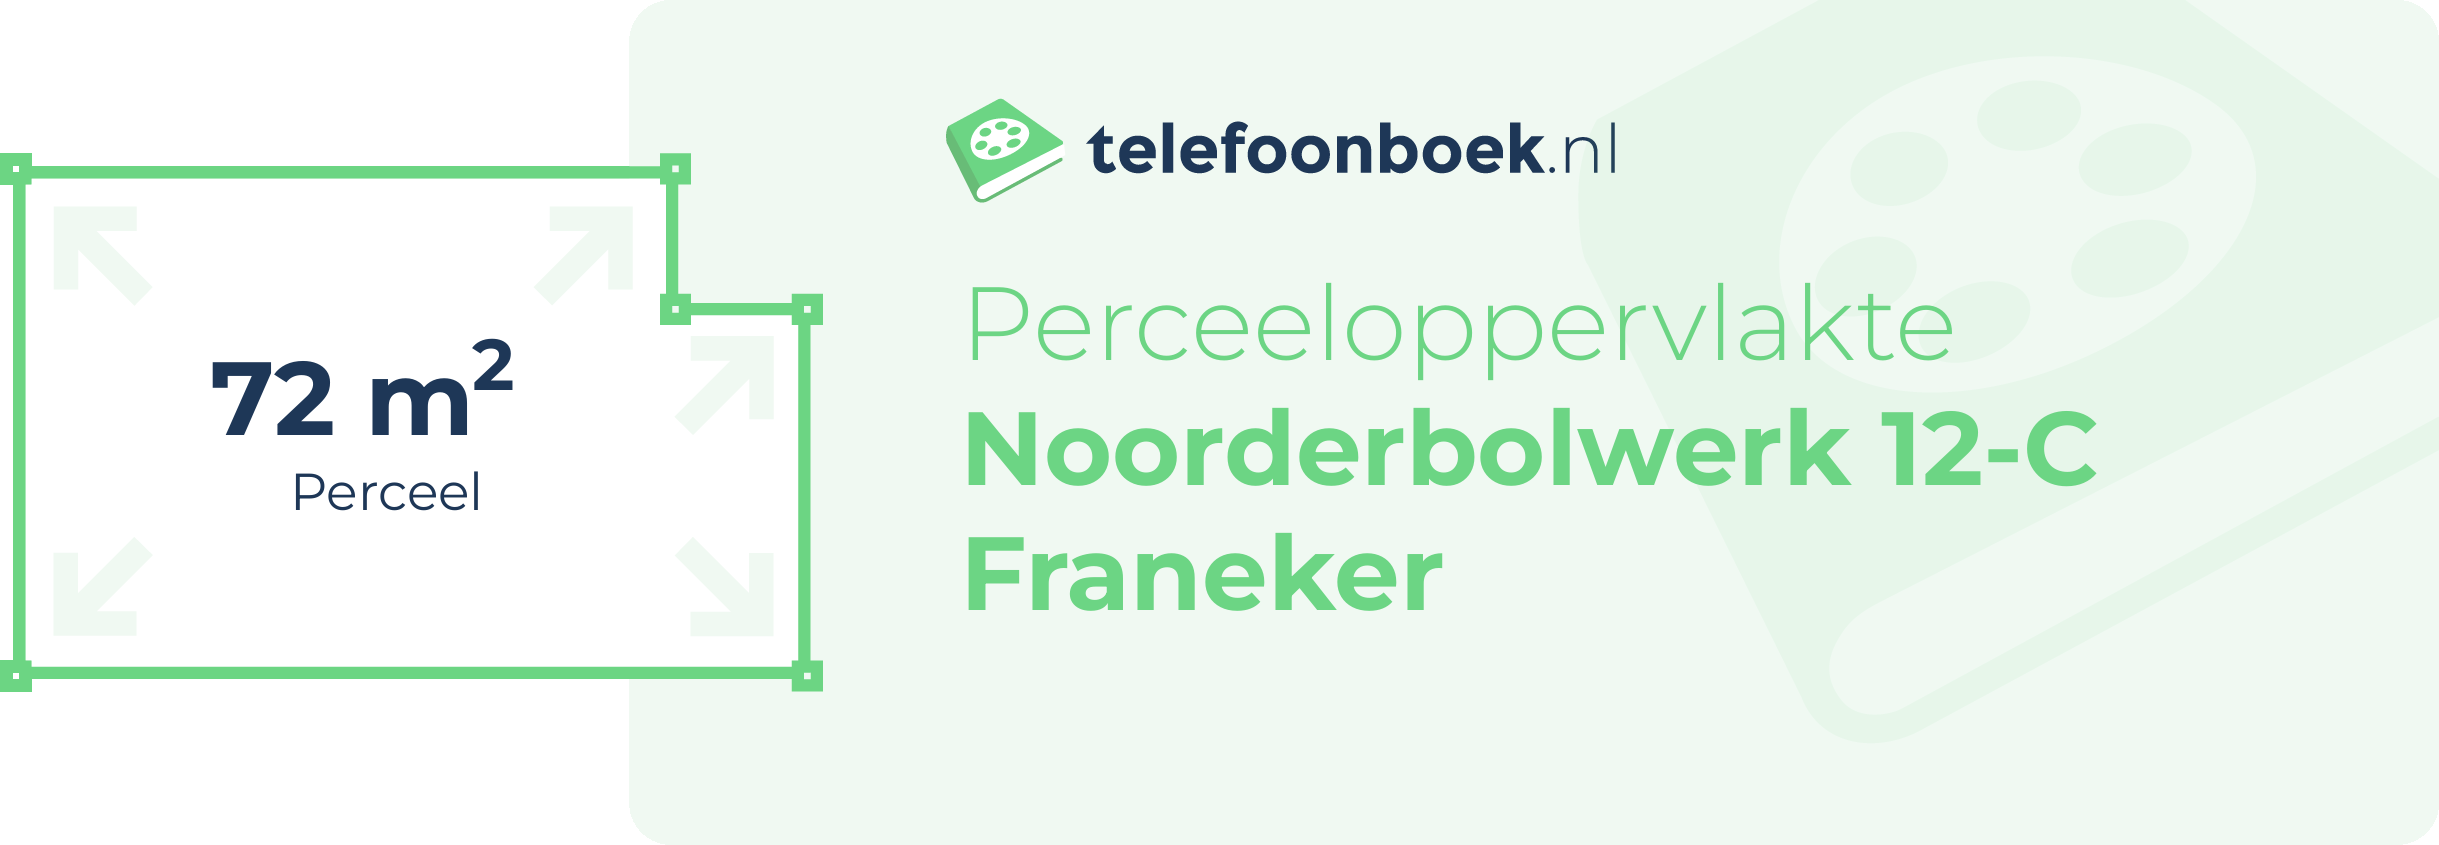 Perceeloppervlakte Noorderbolwerk 12-C Franeker